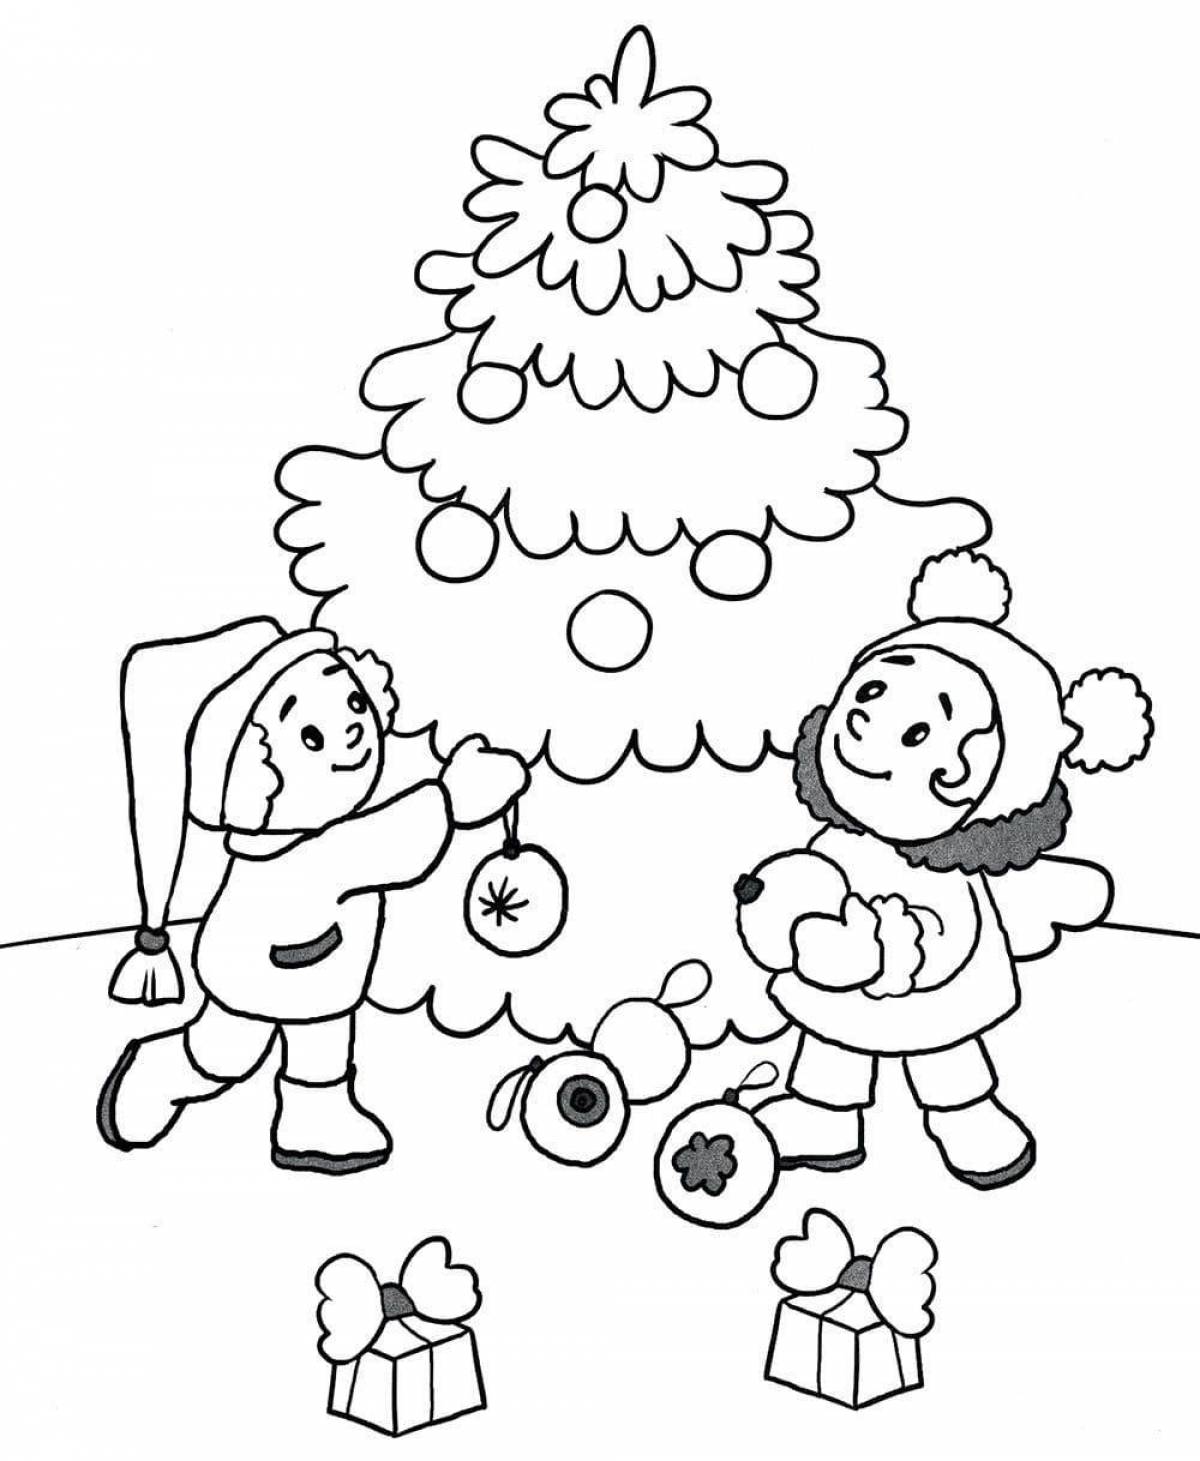 Веселая раскраска для детей зимние забавы 5-6 лет